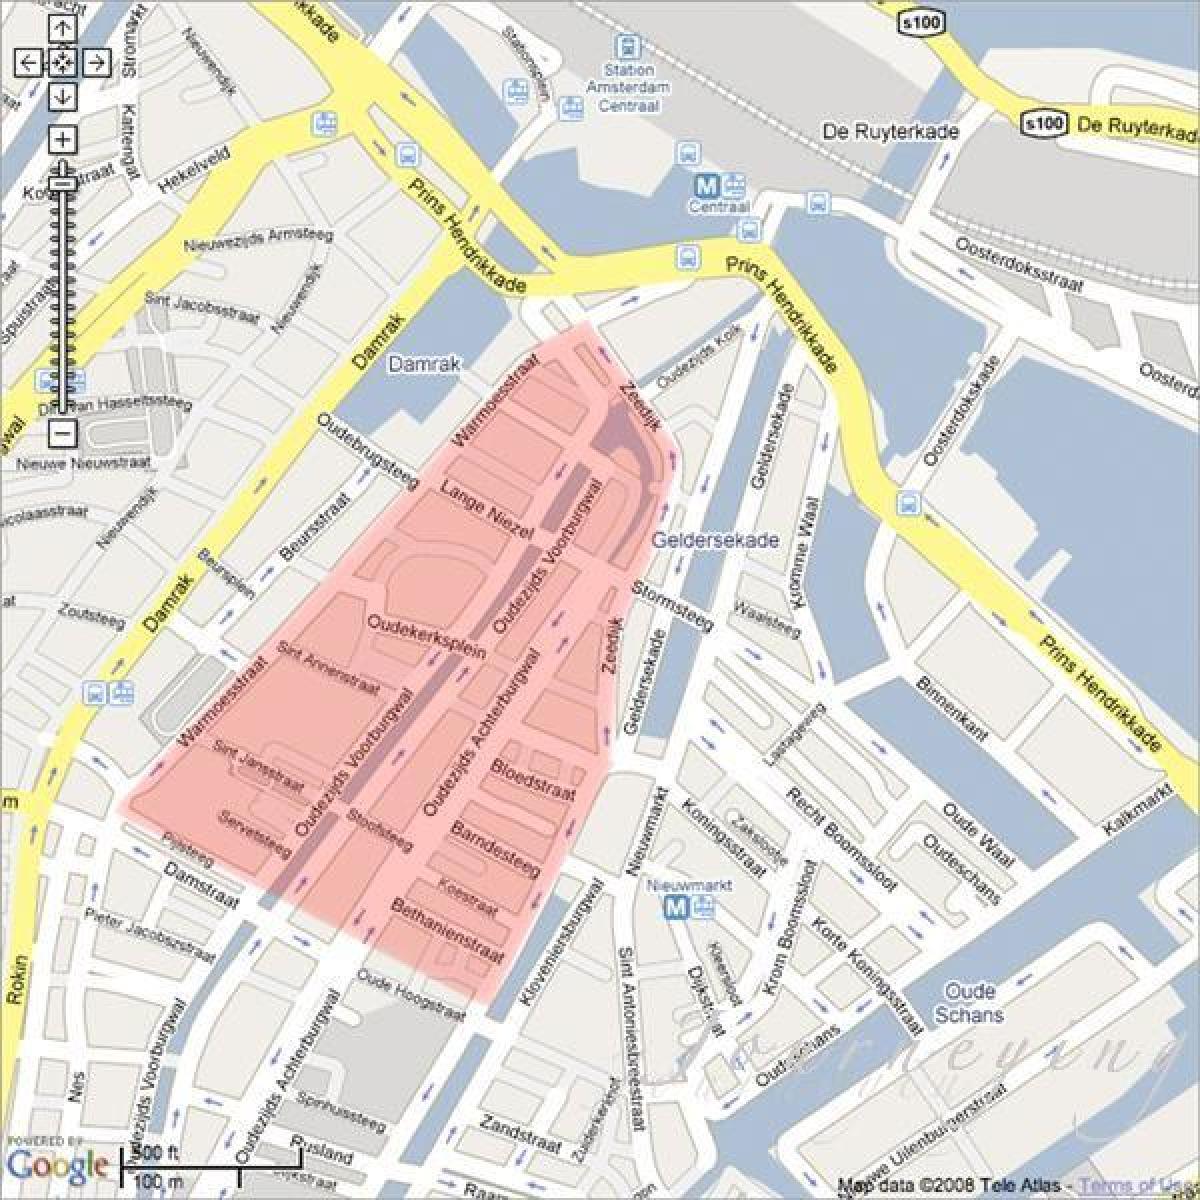 Χάρτης της Βιέννης, red light district